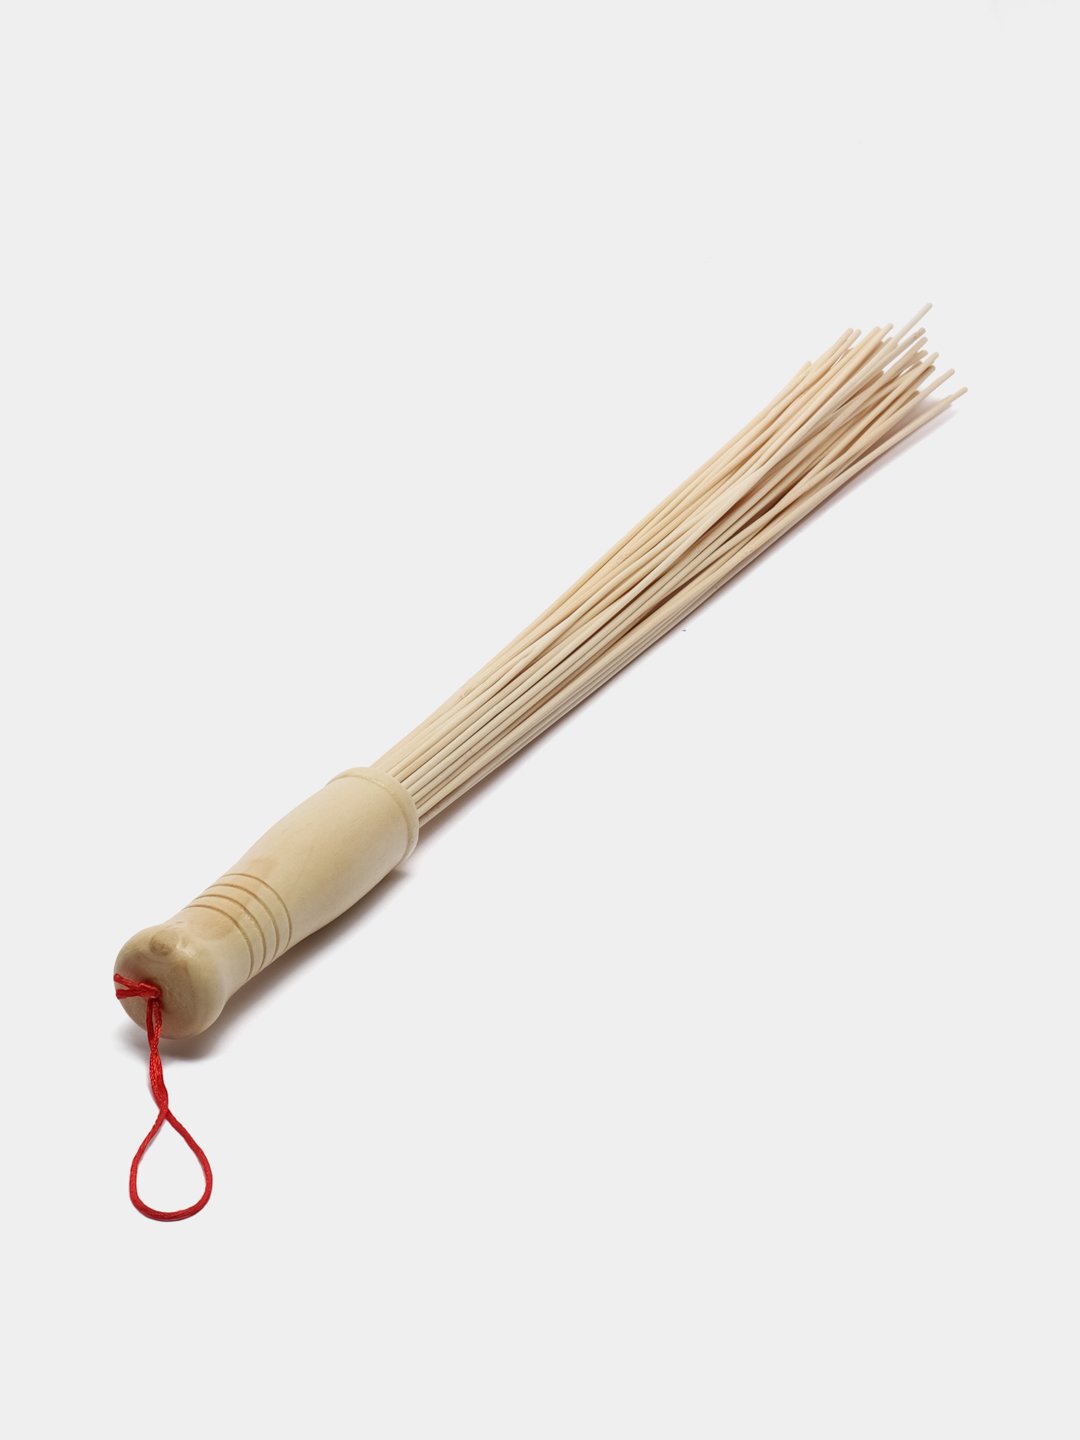 Массажный веник. Веник из бамбука. Металлические венички для массажа. Веник для пола из бамбука.